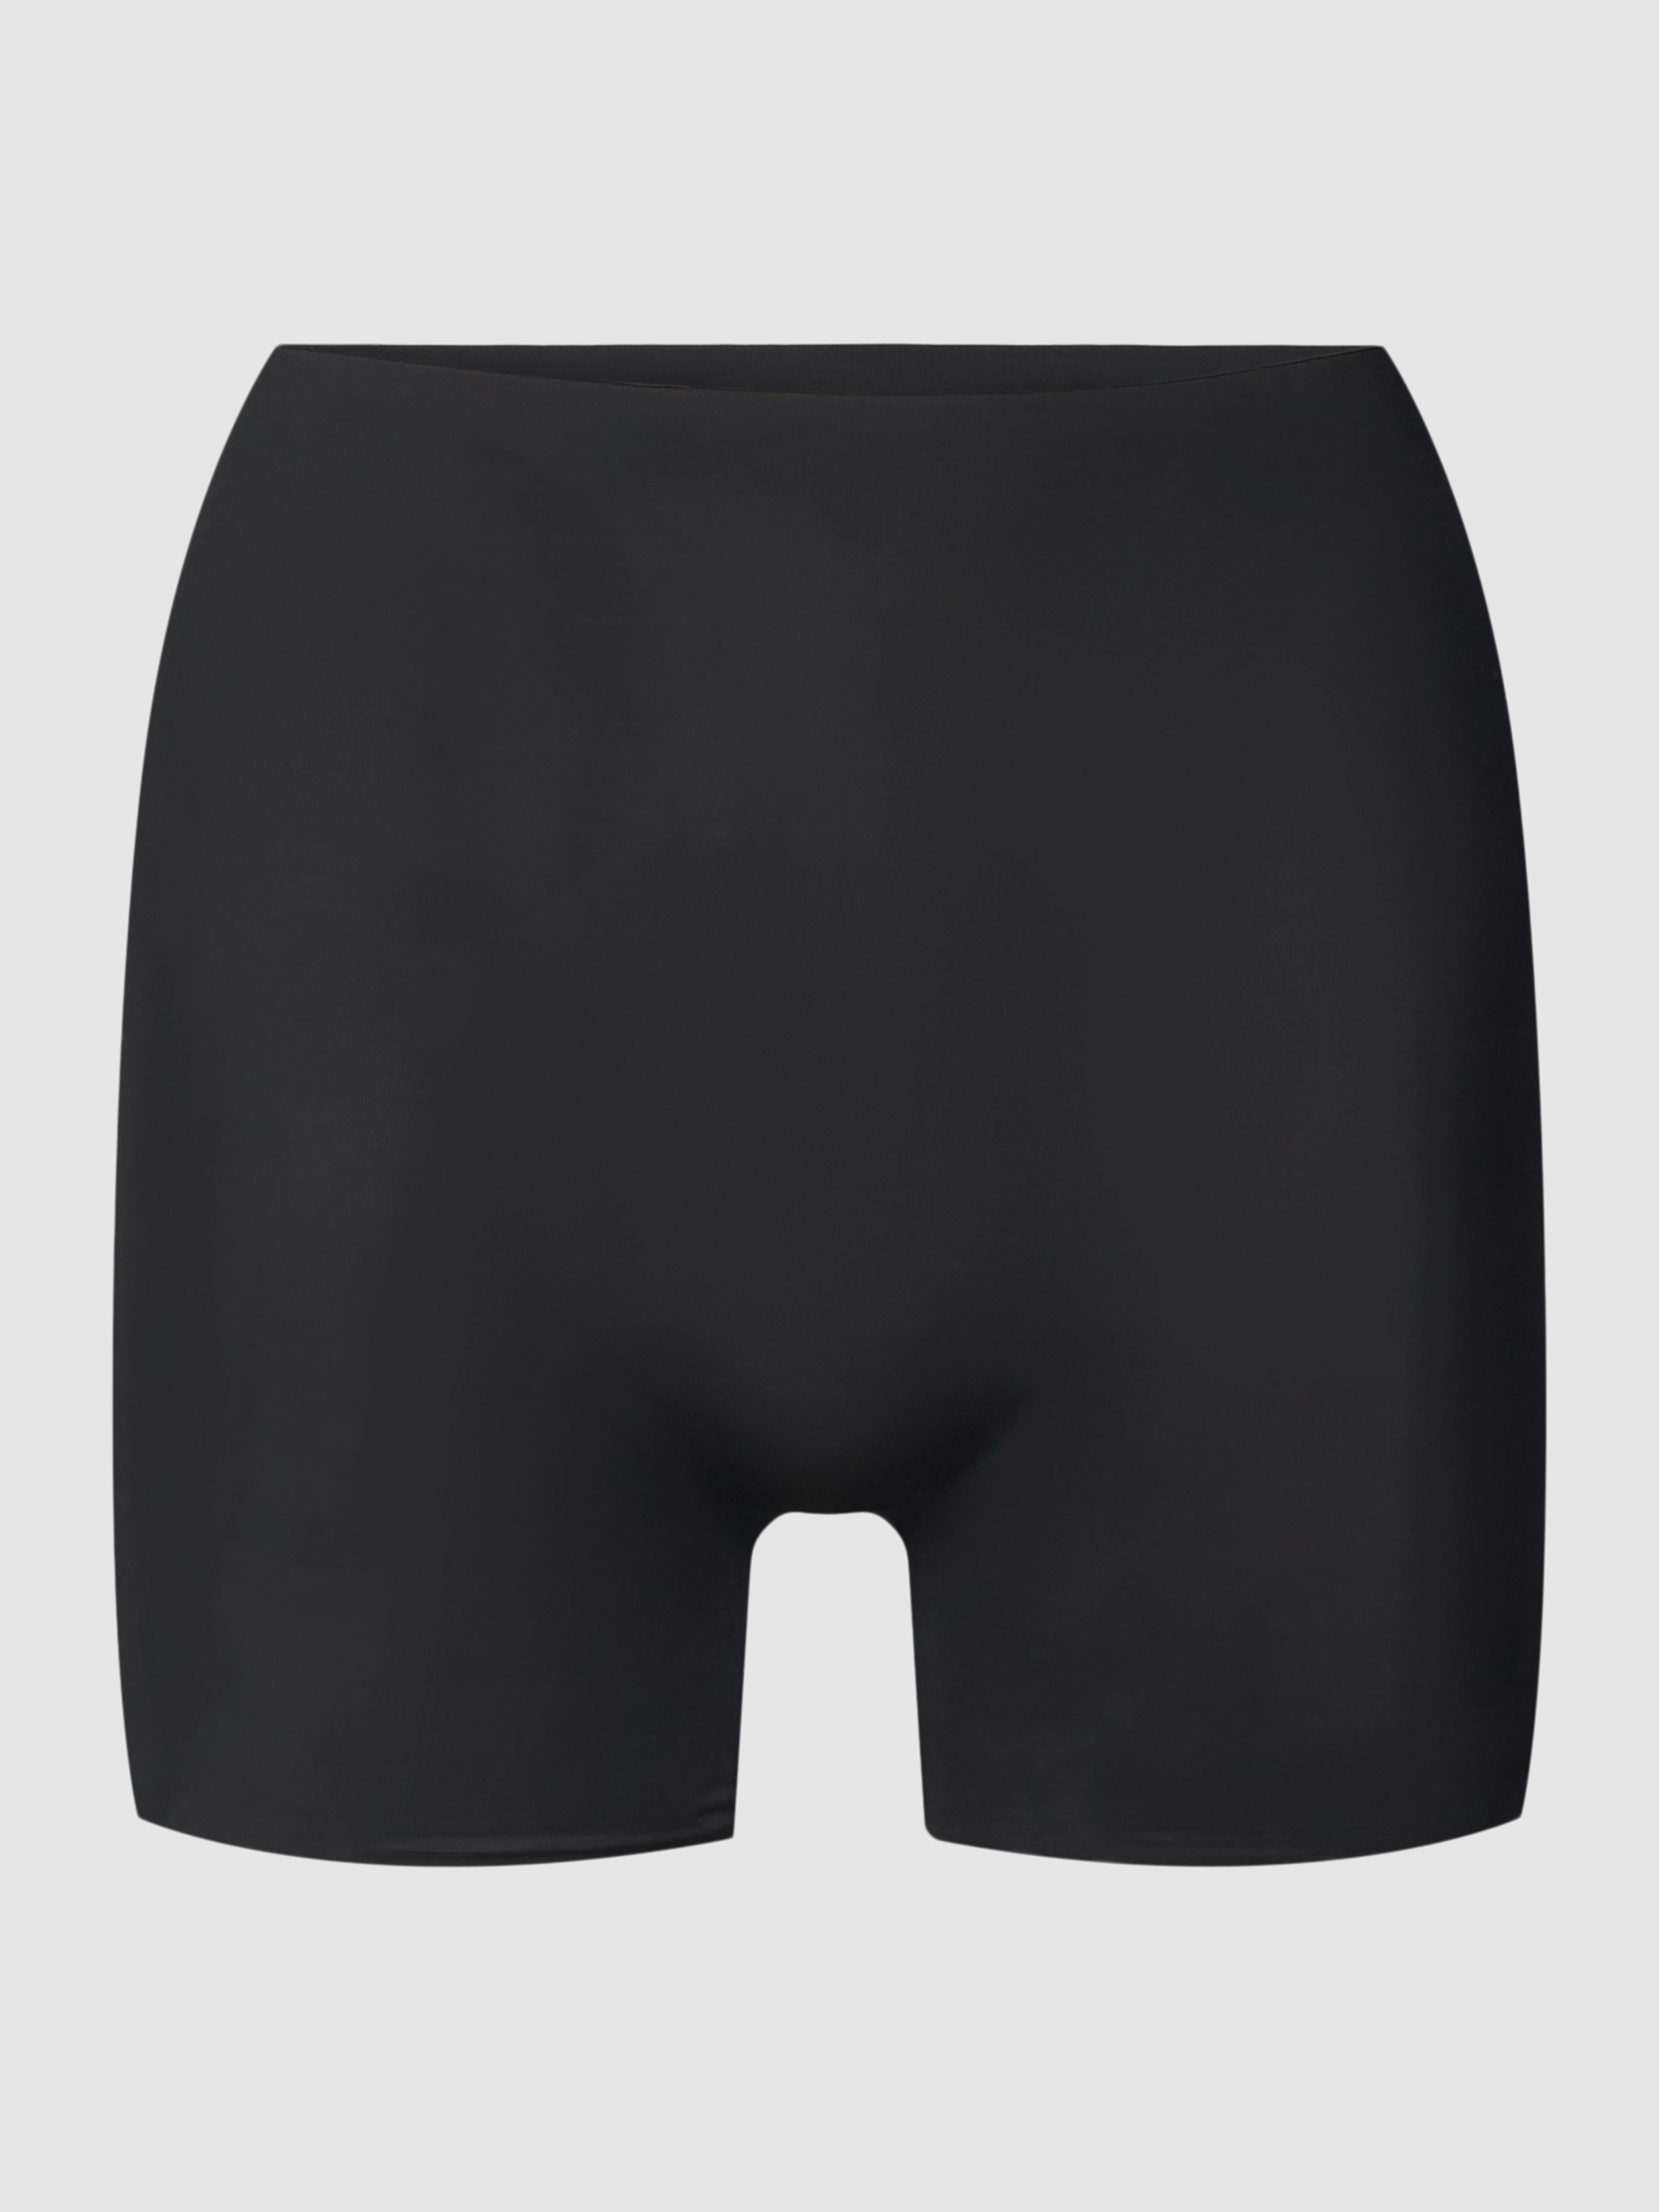 Cпортивные шорты женские Magic BodyFashion 1836347 черные 2XL (доставка из-за рубежа)